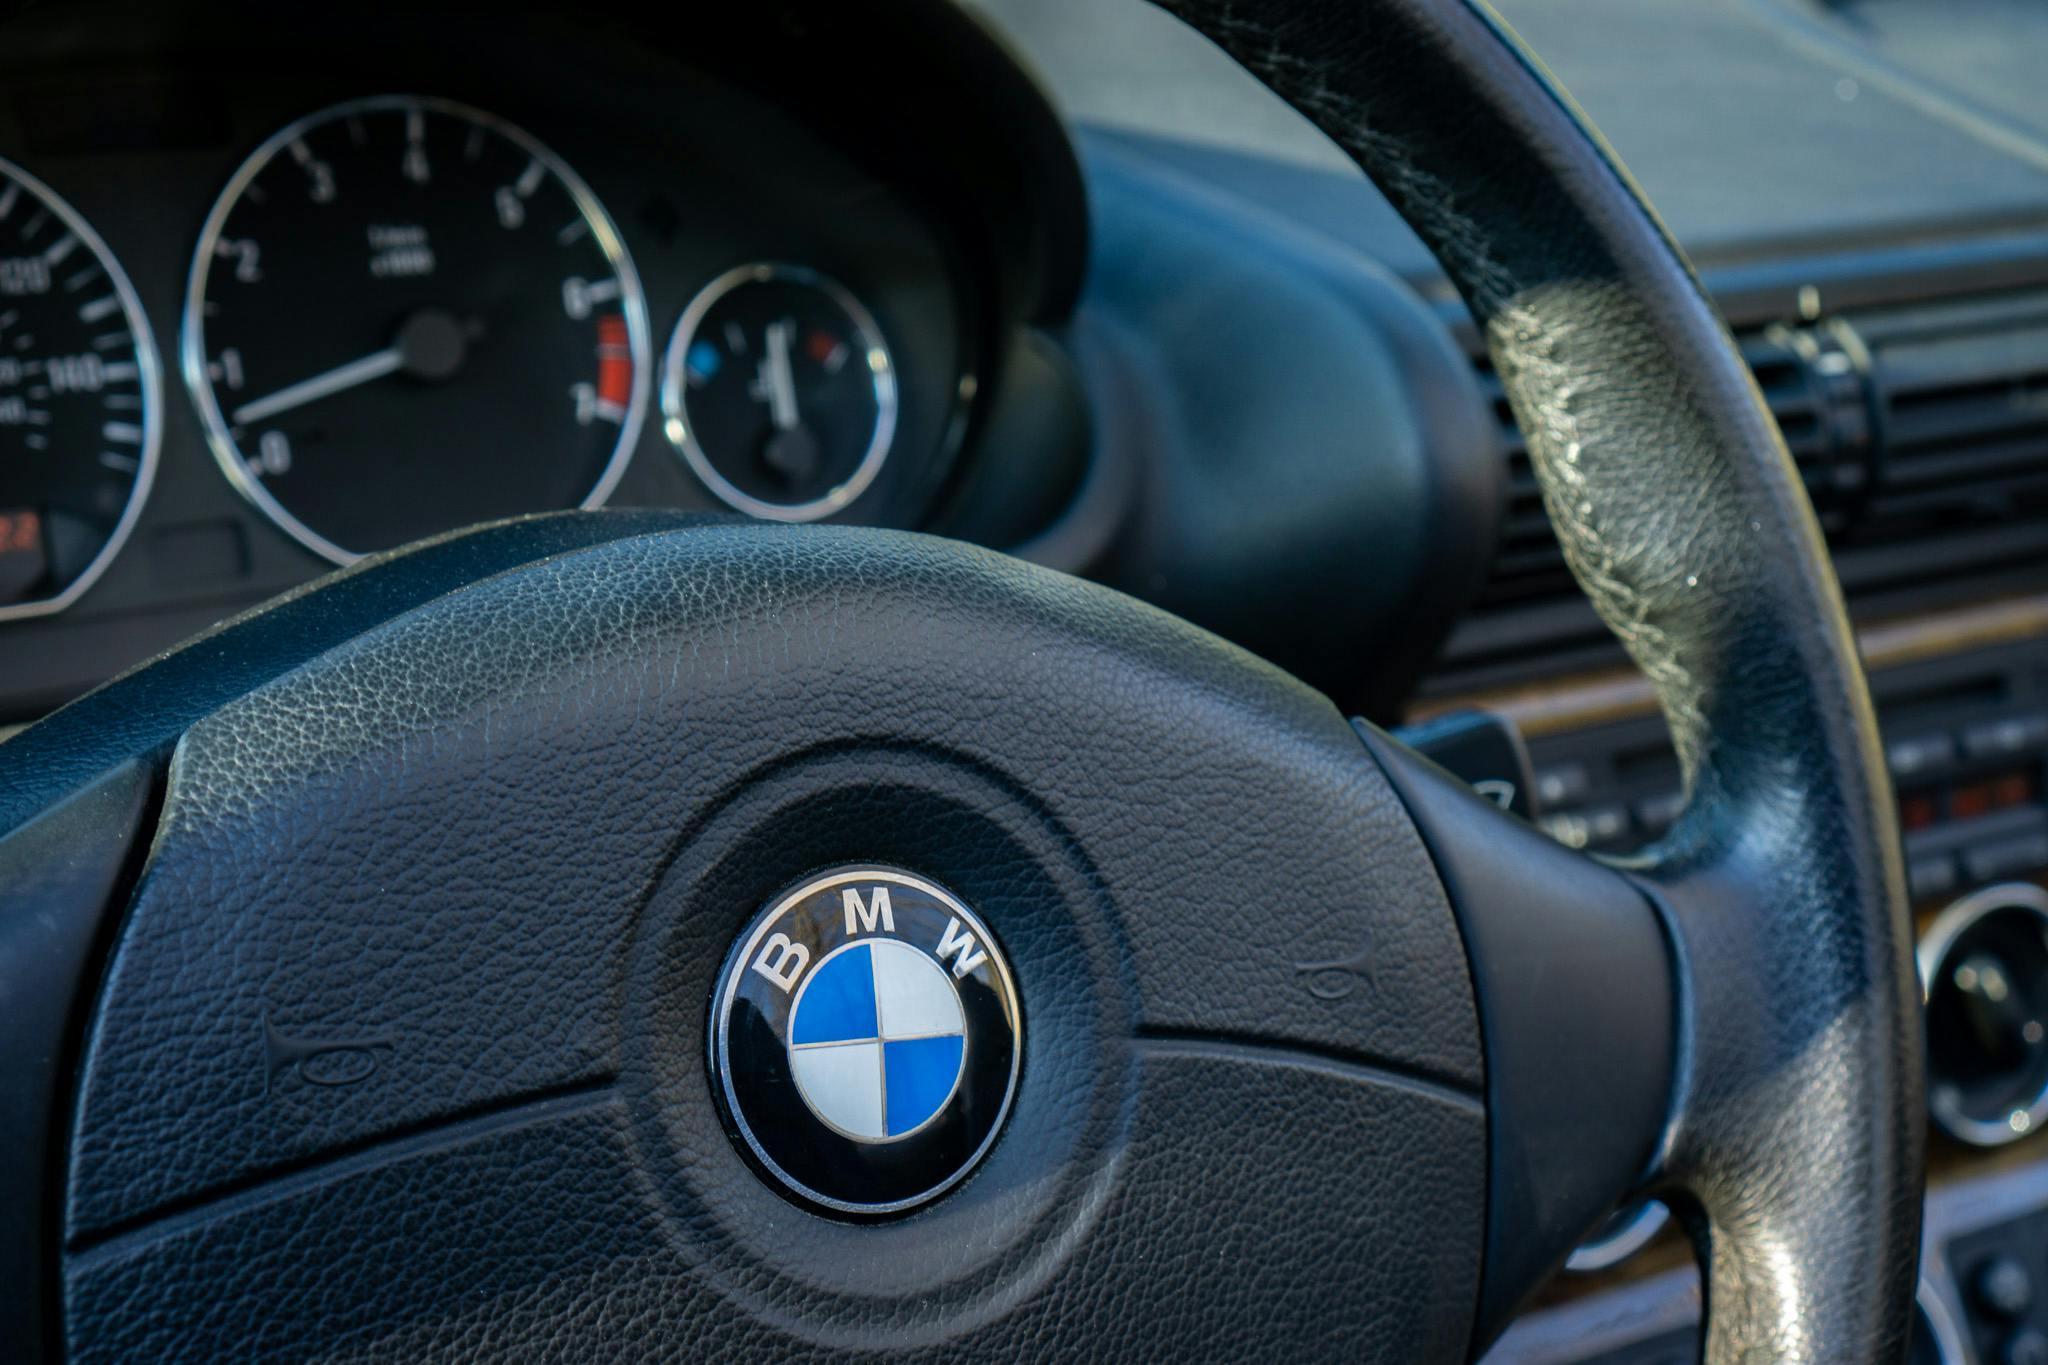 2001 BMW Z3 interior steering wheel